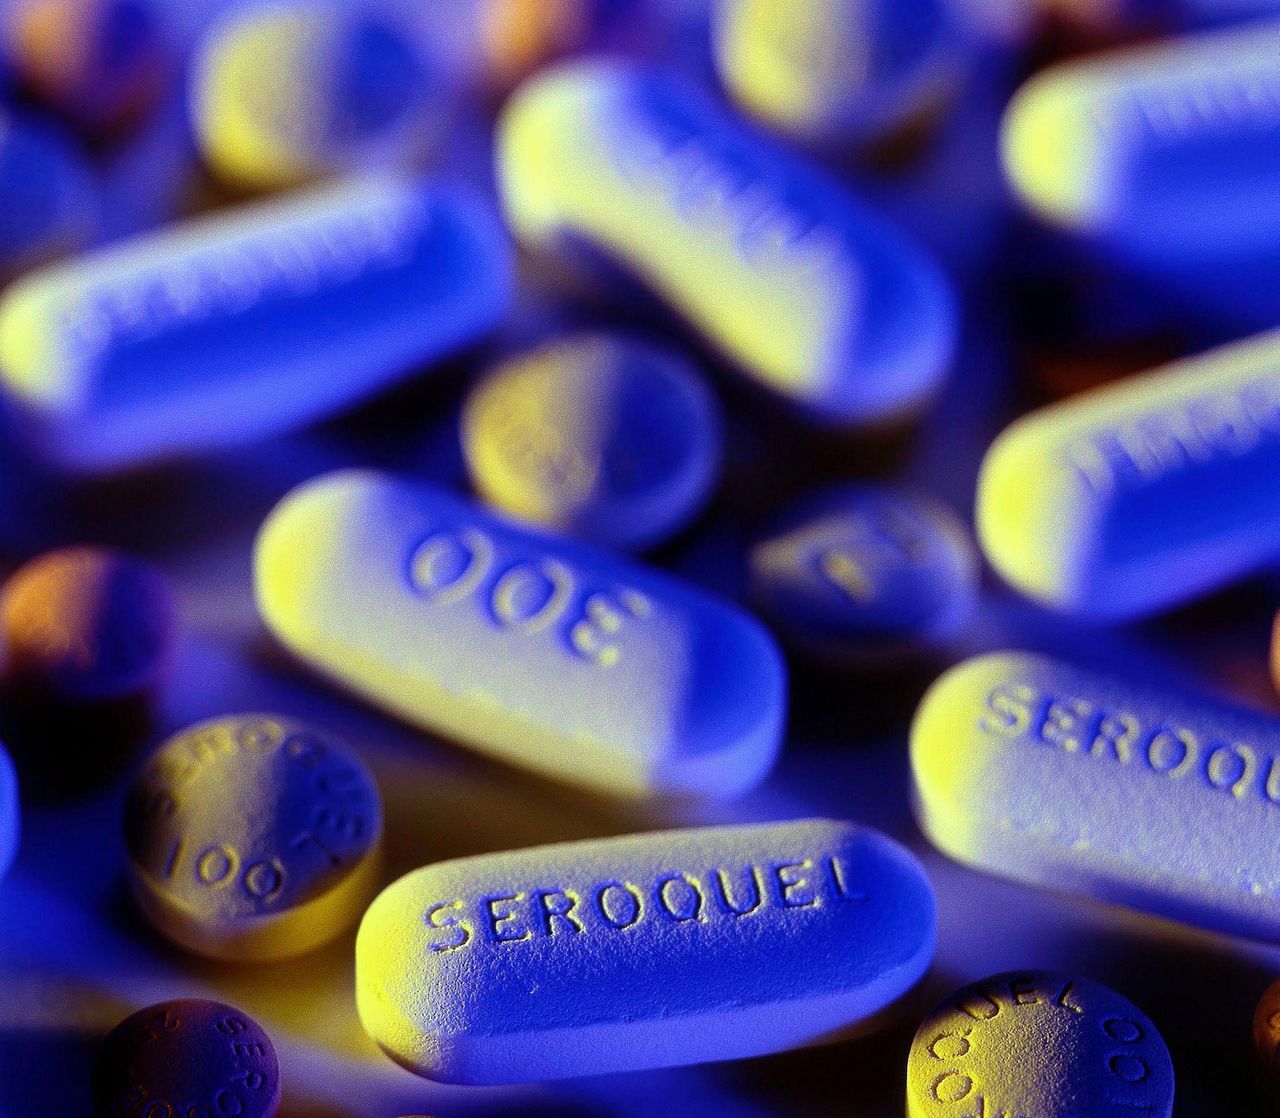 Het omstreden antidepressivum Seroquel is een van de geneesmiddelen die artsen goedkeurden terwijl ze door de fabrikant werden betaald. Foto EPA/ASTRAZENECA/HO